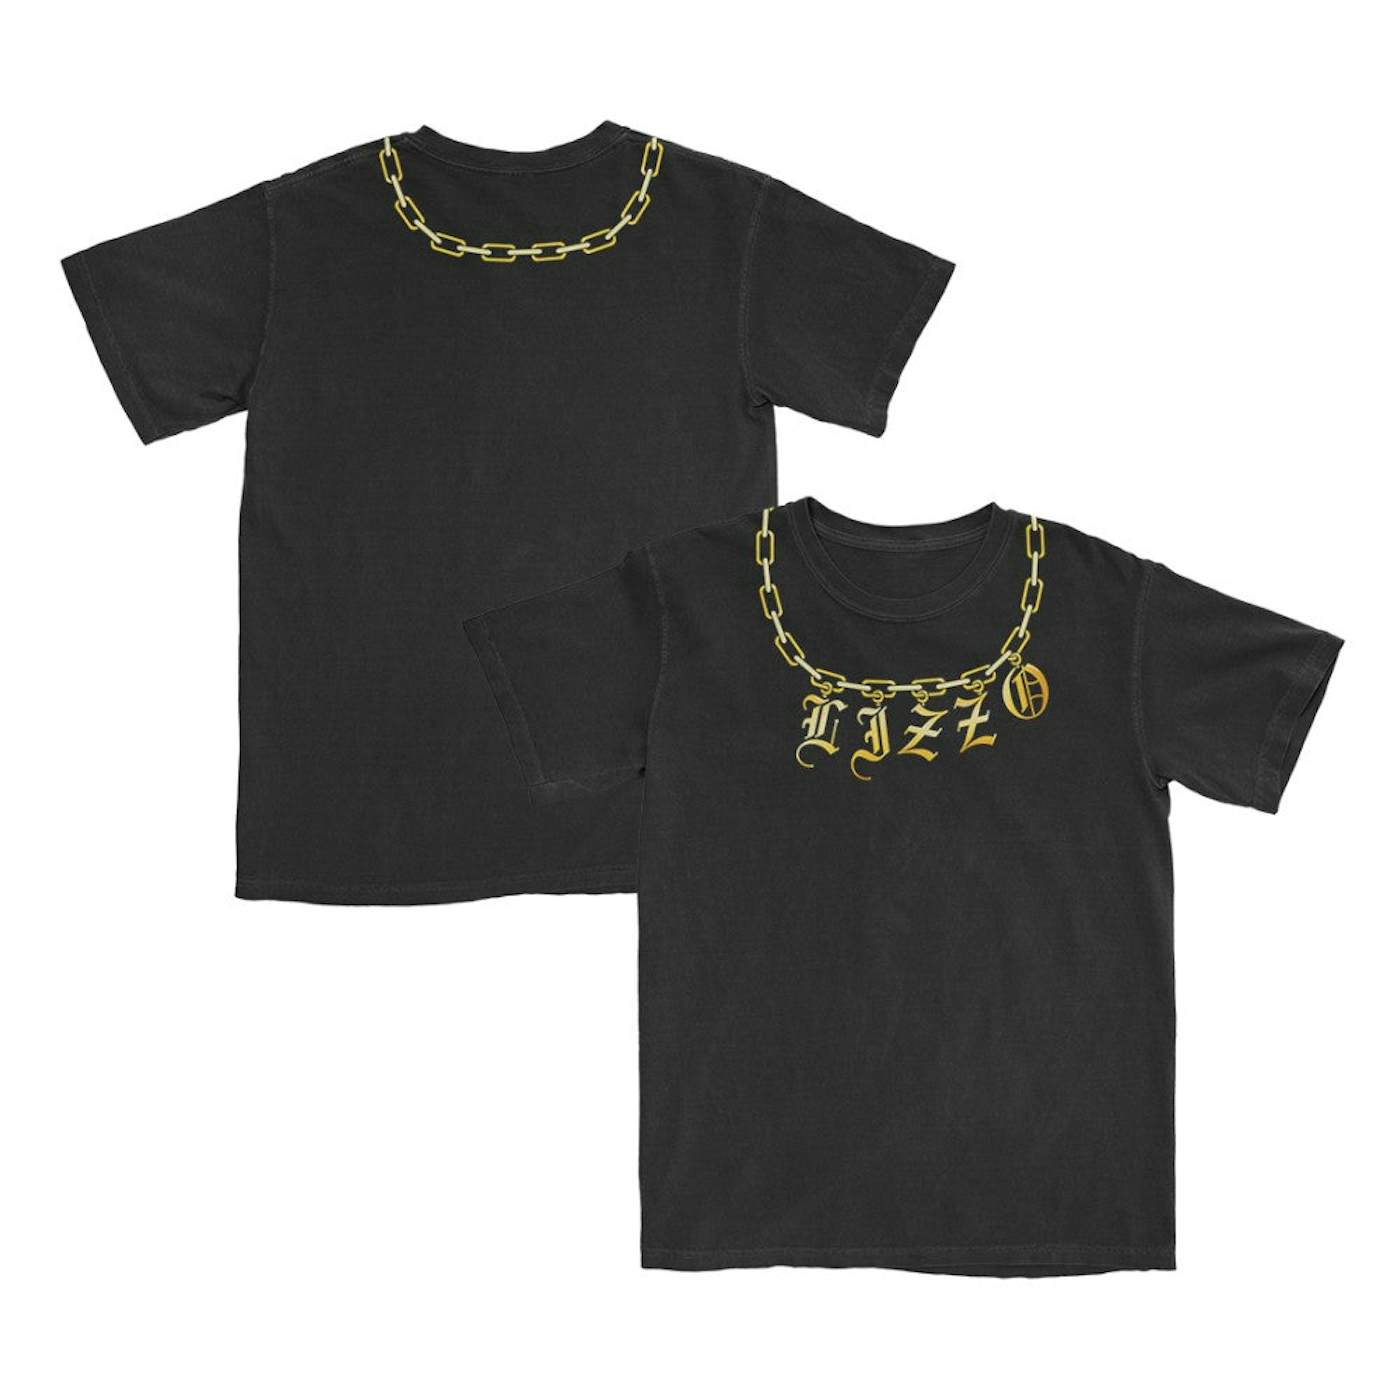 Lizzo Chain T-Shirt